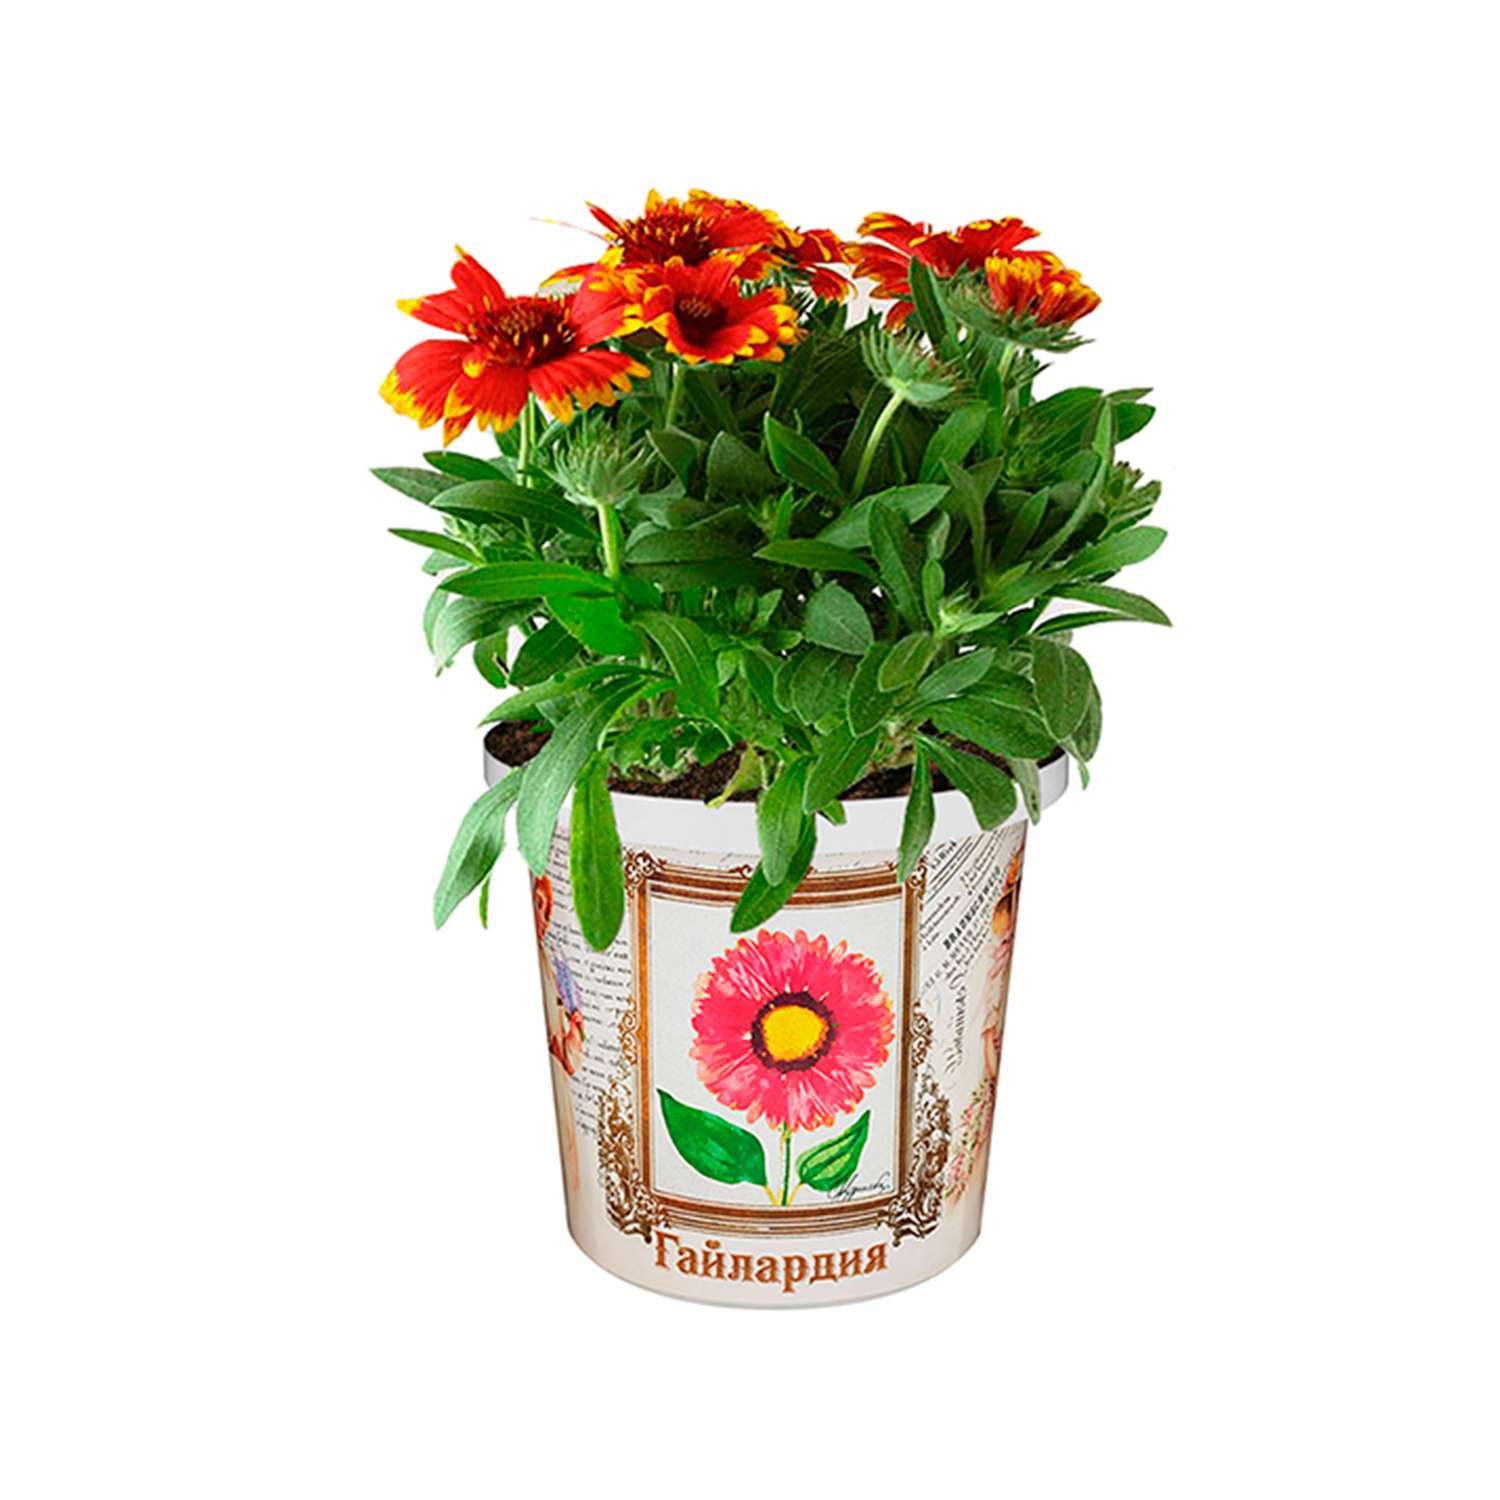 Набор для выращивания растений Rostok Visa Вырасти сам цветок Гайлардия в подарочном горшке - фото 5